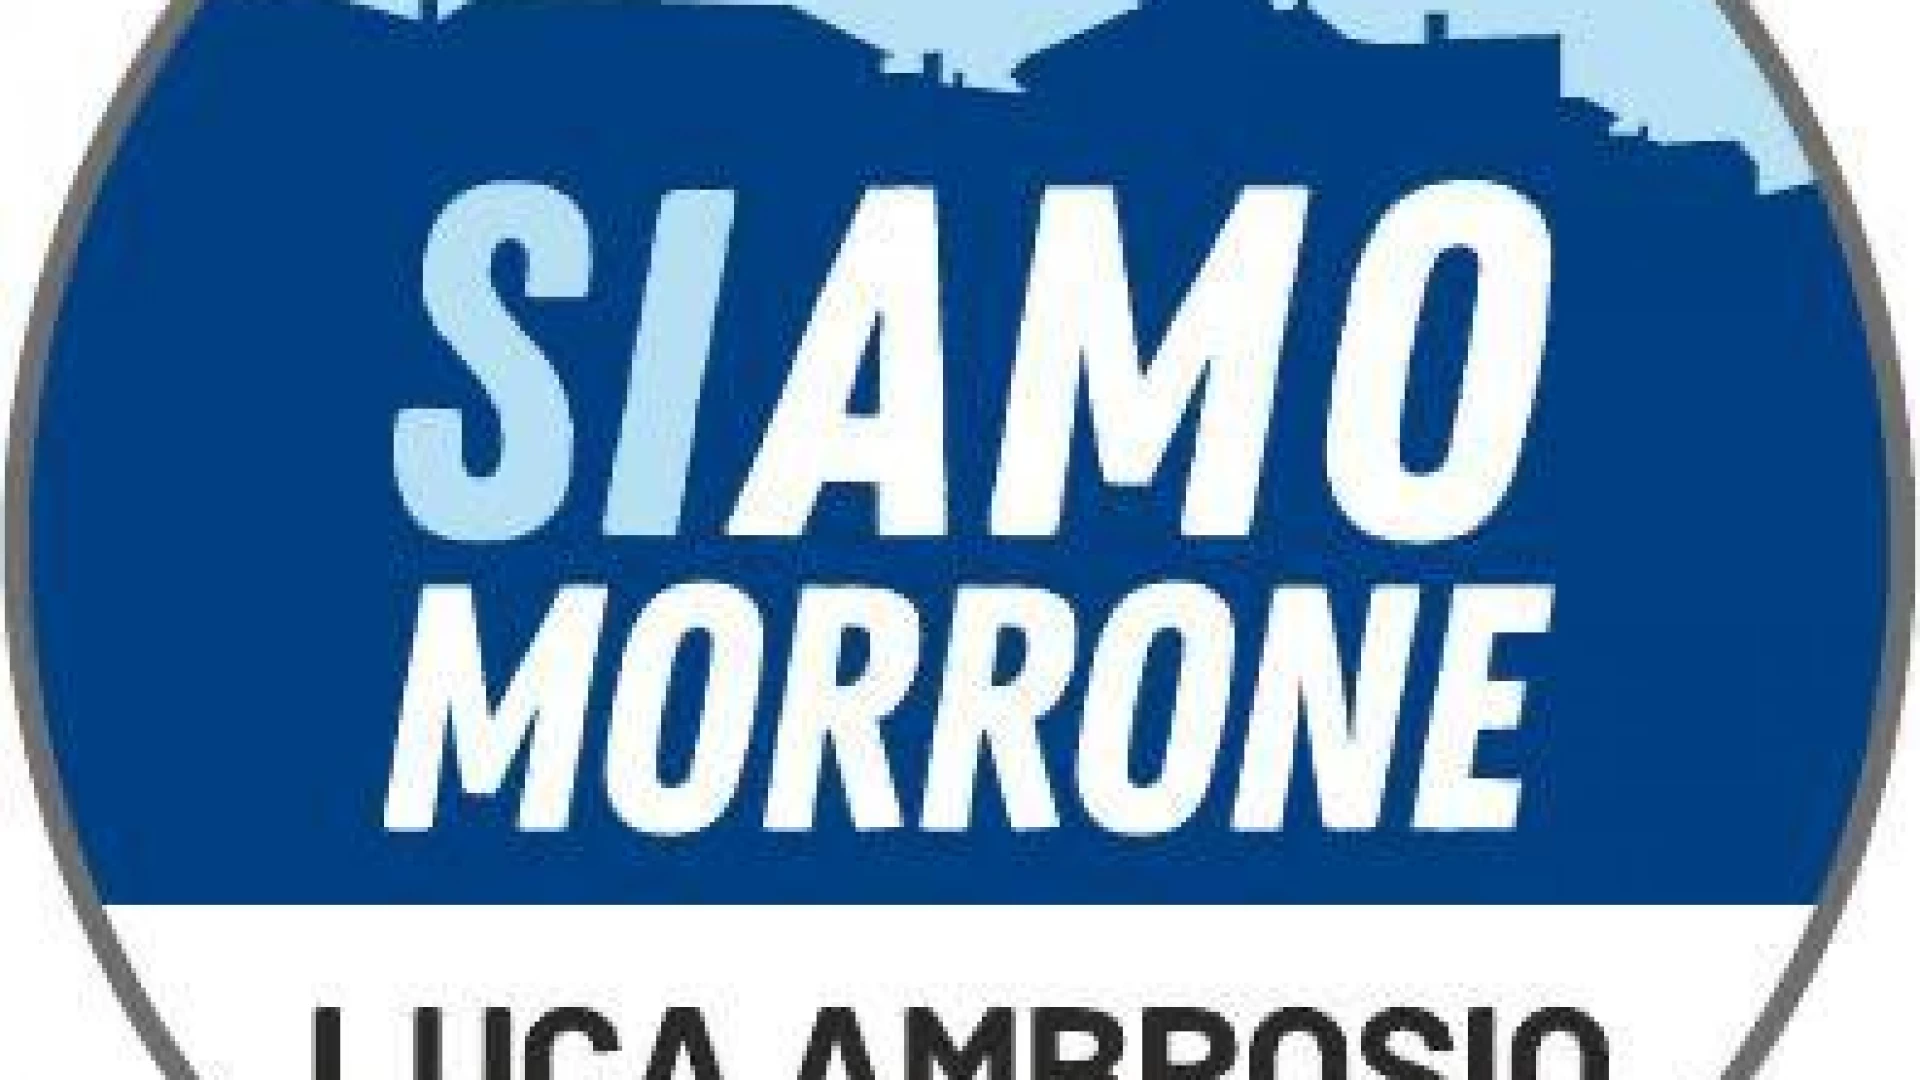 Morrone del Sannio: a poche settimane del voto la maggioranza già perde pezzi. La nota del gruppo di minoranza “Siamo Morrone”.